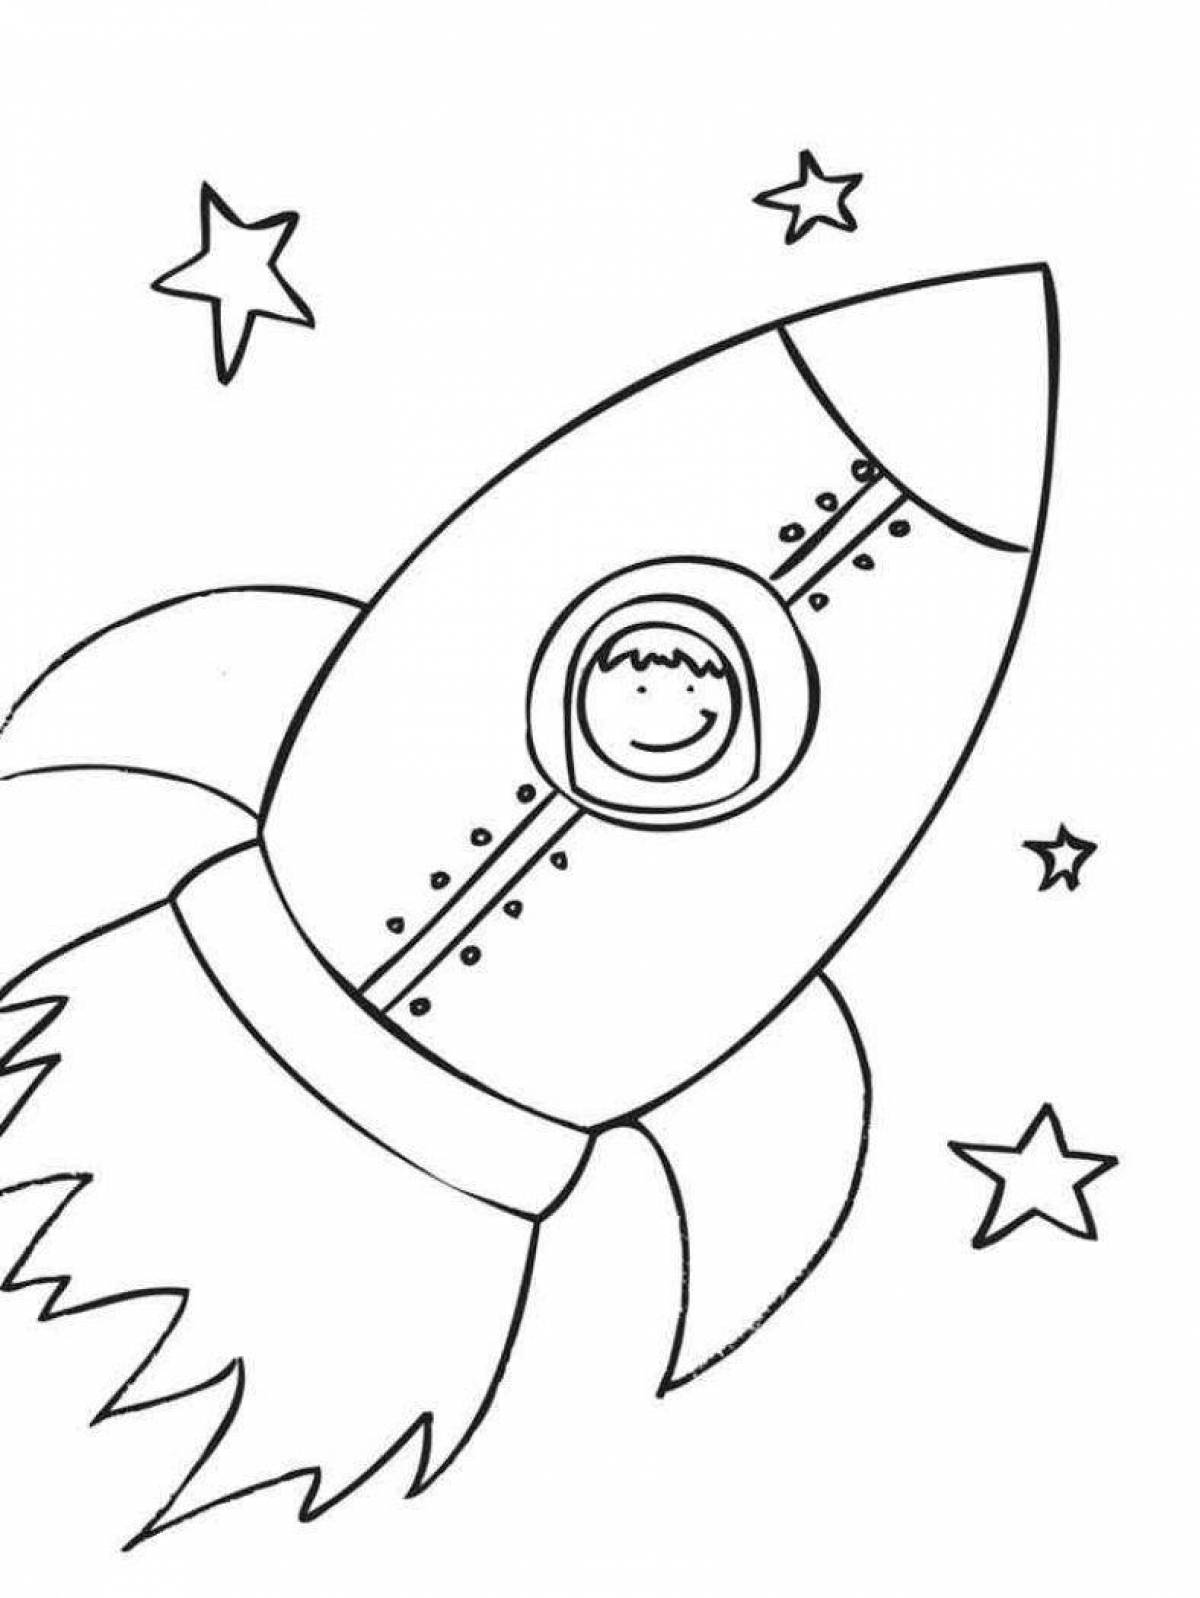 Поделка ко дню космонавтики шаблоны распечатать. Ракета раскраска. Раскраска для малышей. Космос. Космос раскраска для детей. Ракета раскраска для детей.